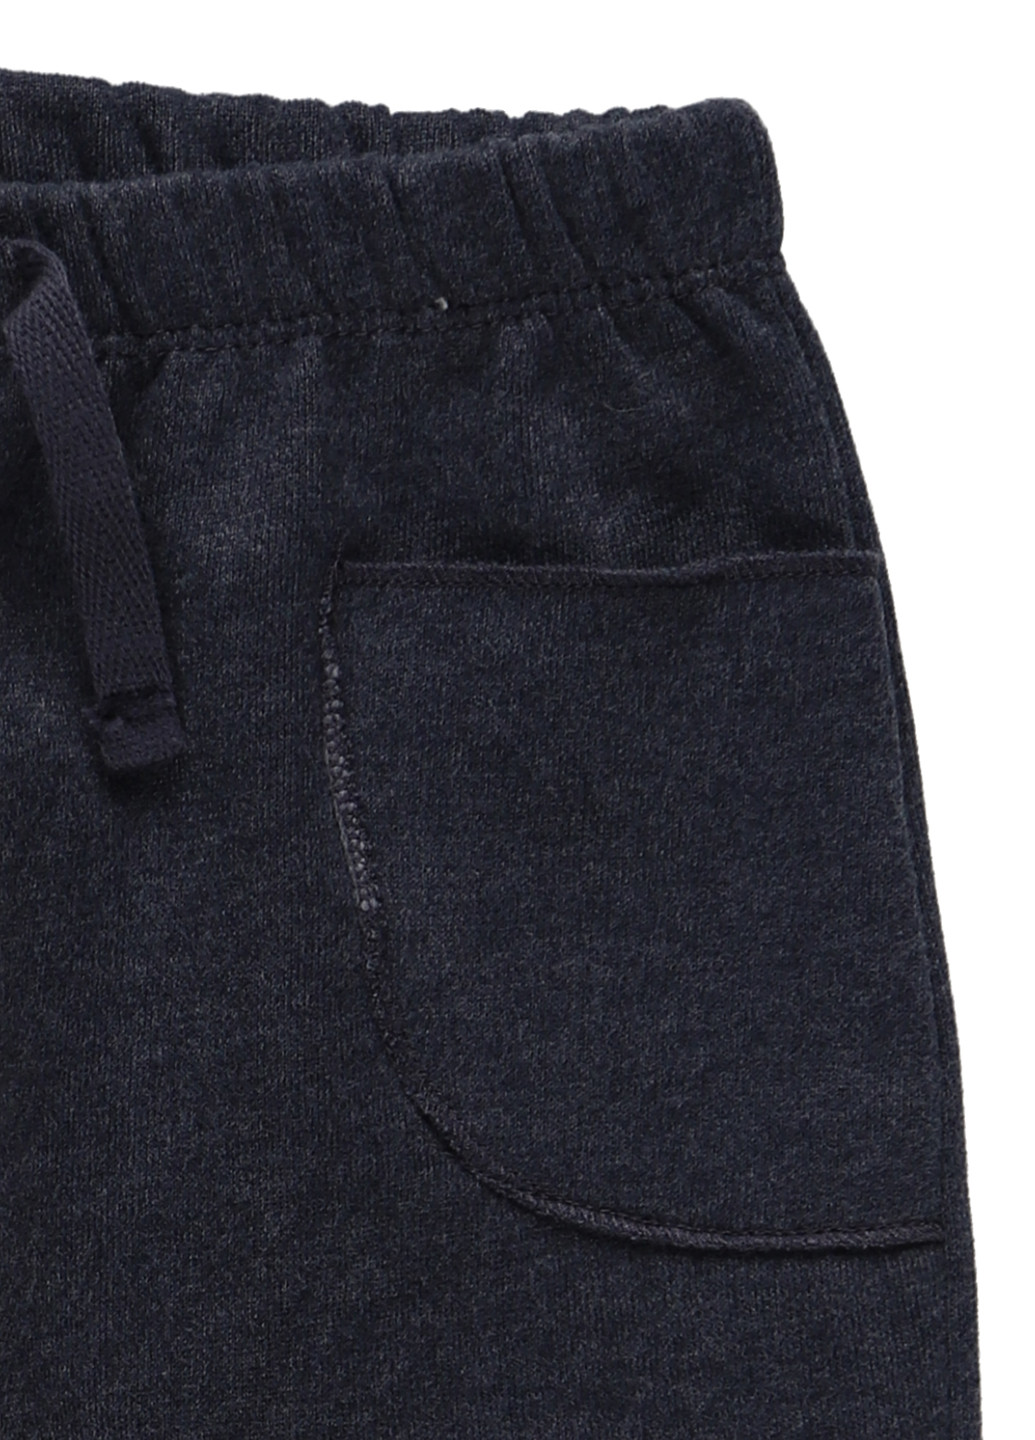 Серо-синие спортивные демисезонные брюки прямые Primark